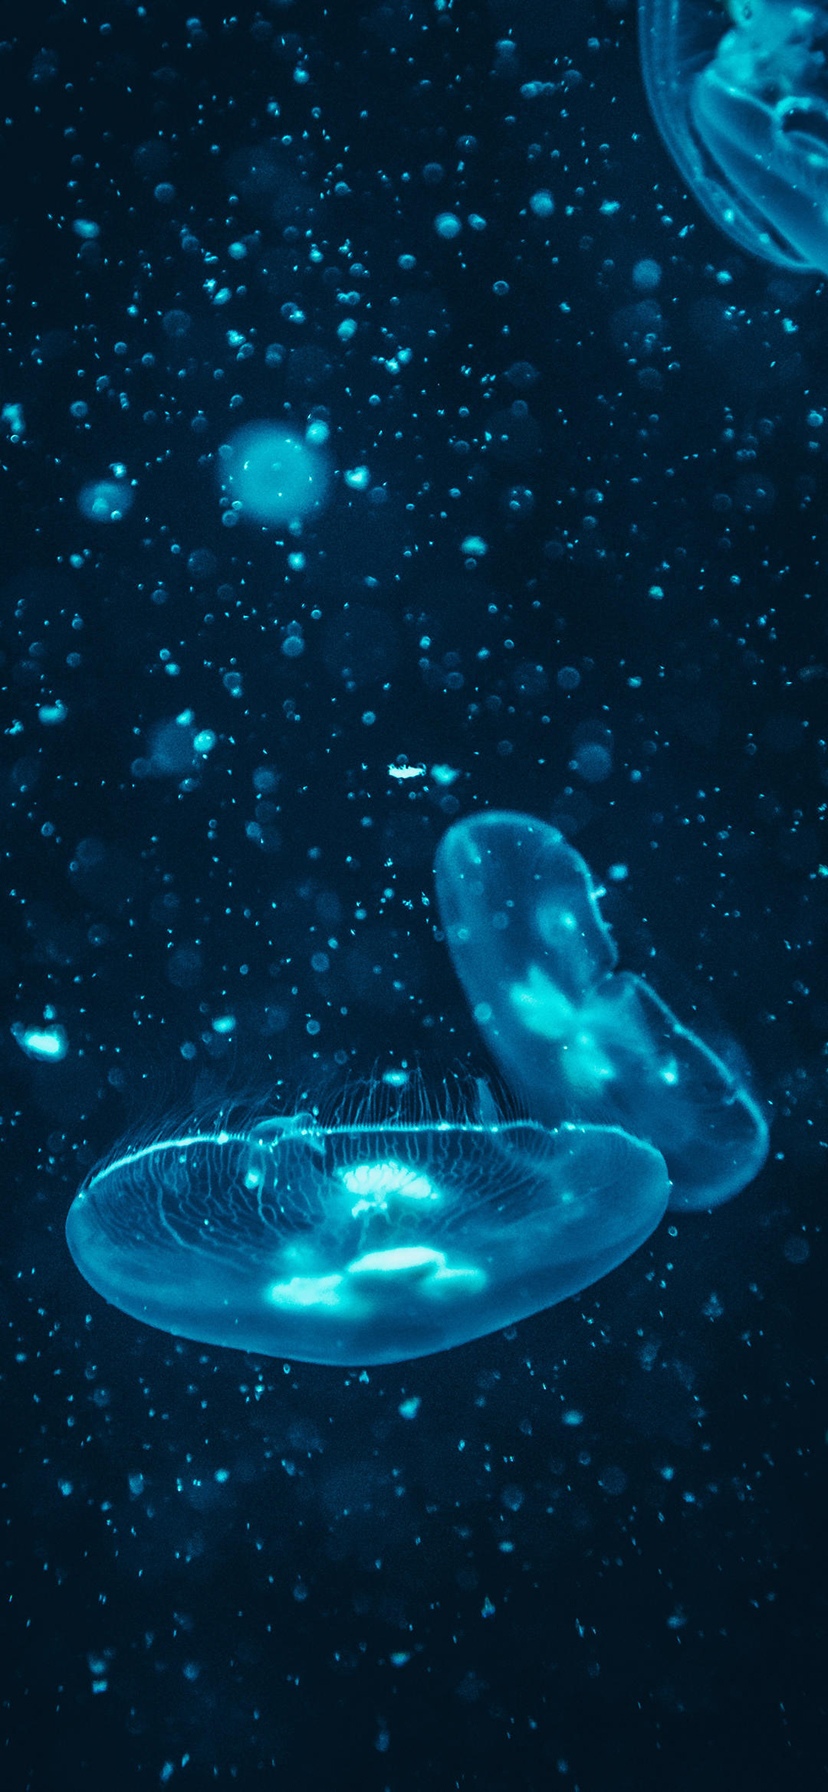 梦幻的深海水母